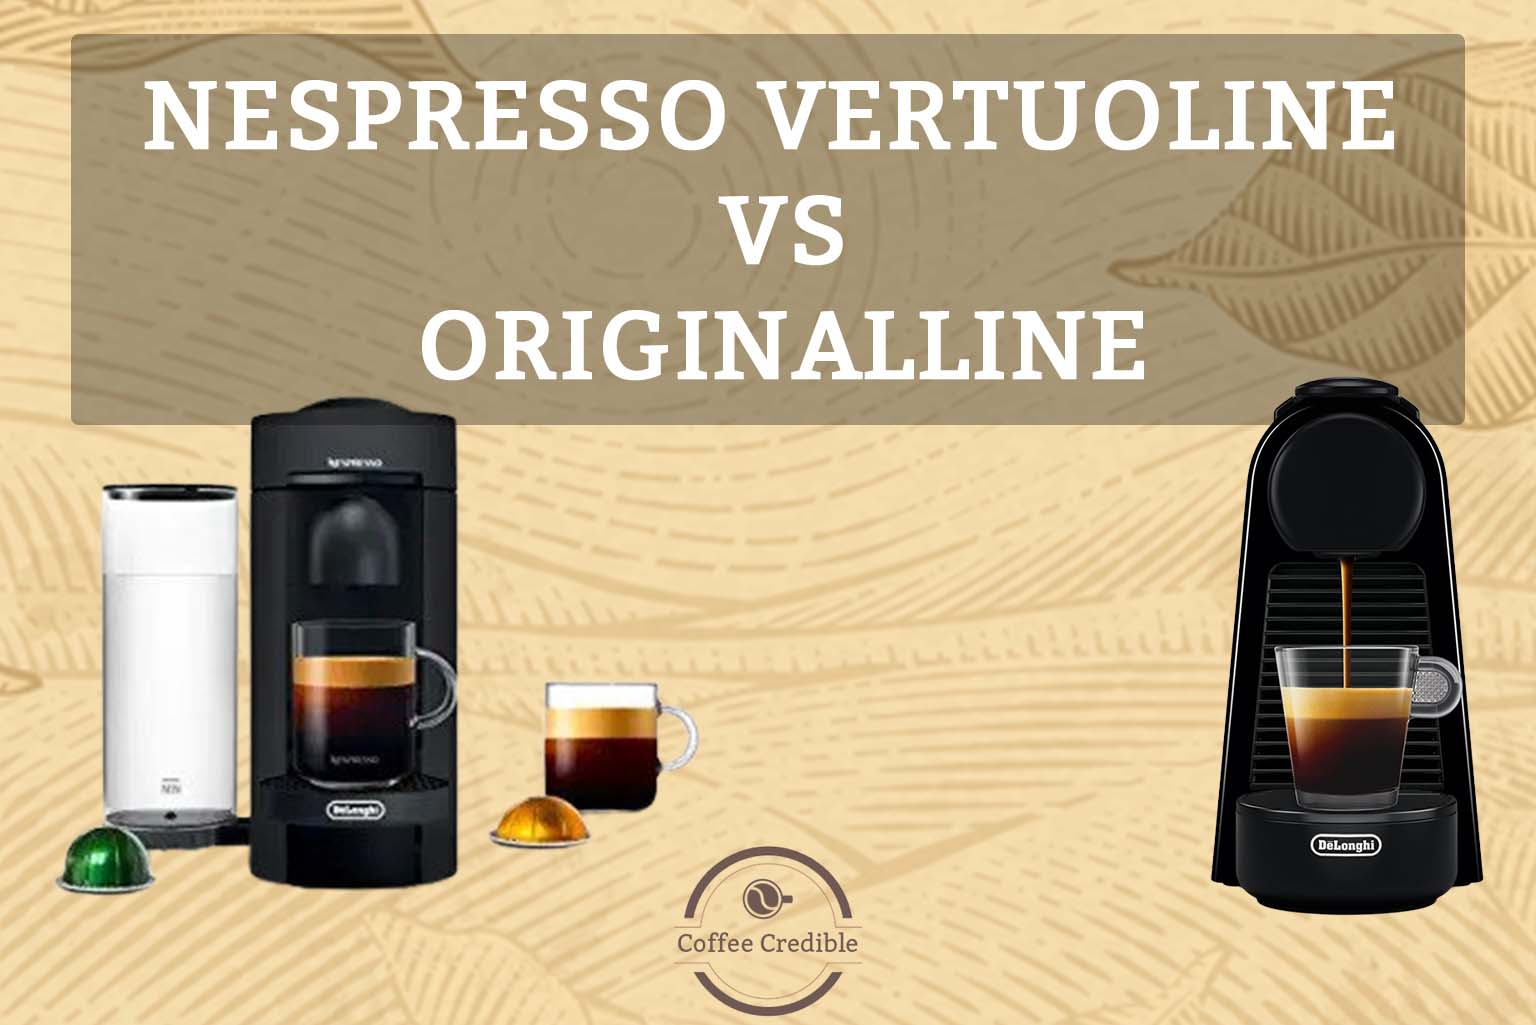 Nespresso VertuoLine Vs OriginalLine: What Are The Differences? [The Final Showdown]